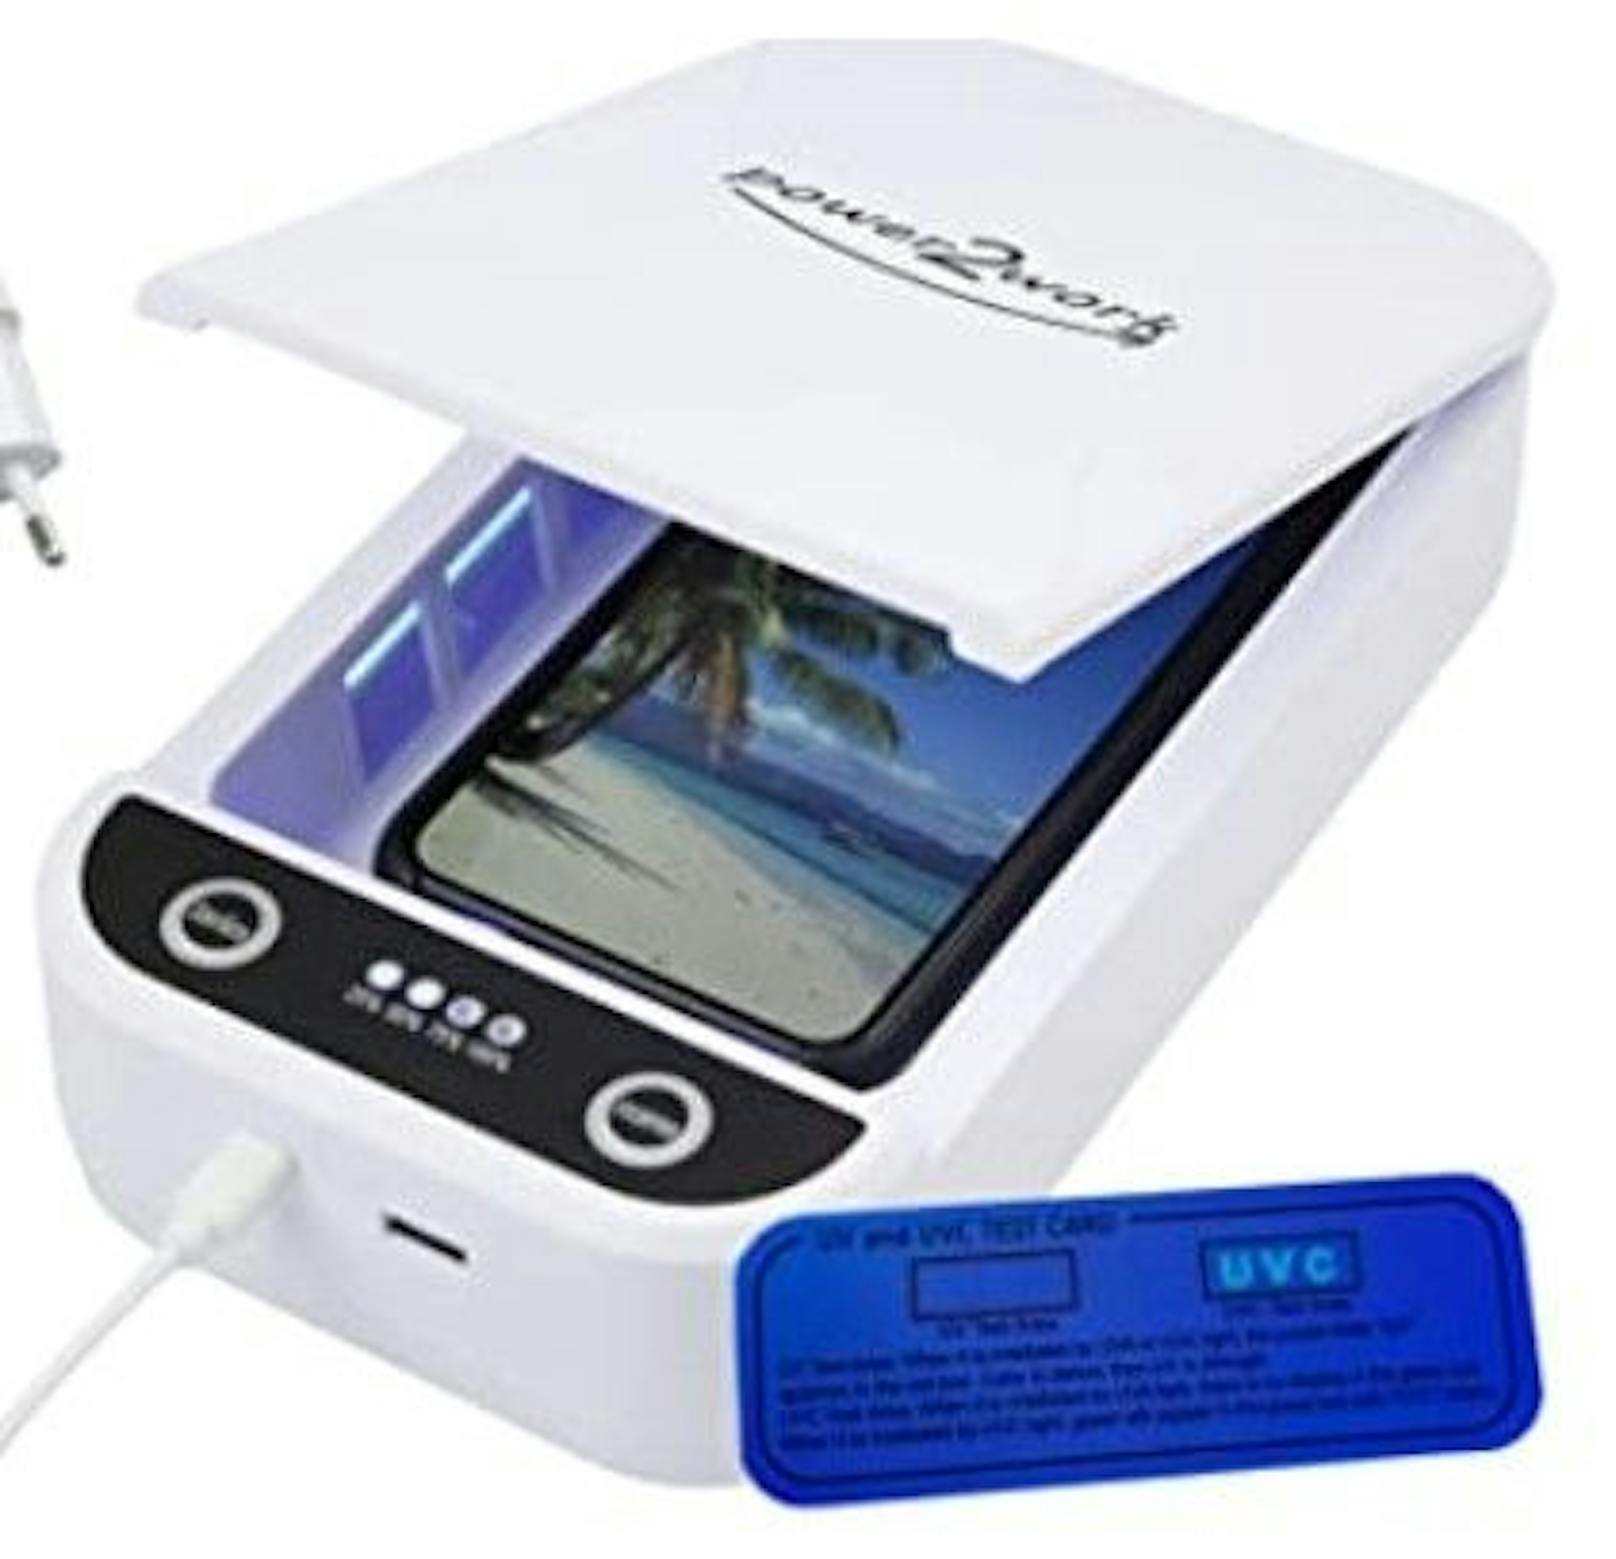 Desinfektionsgerät für Masken: Die UV Sterilisator-Box tötet 99,9% aller Keime und Viren in 5 Minuten. Kann für Masken und Alltagsgegenstände wie&nbsp;Brille, Schmuck, Uhren und Handy verwendet werden. <a href="https://www.amazon.de/Sterilisator-Handy-Ultraviolett-Lampe-Desinfektionsger%C3%A4t/dp/B08Y759DP2/ref=sr_1_6?__mk_de_DE=%C3%85M%C3%85%C5%BD%C3%95%C3%91&amp;crid=2NN2OPUJFRVWM&amp;keywords=maske+desinfektion&amp;qid=1639664348&amp;sprefix=Maske+Desin%2Clighting%2C190&amp;sr=8-6">Hier</a> erhältlich.<br>